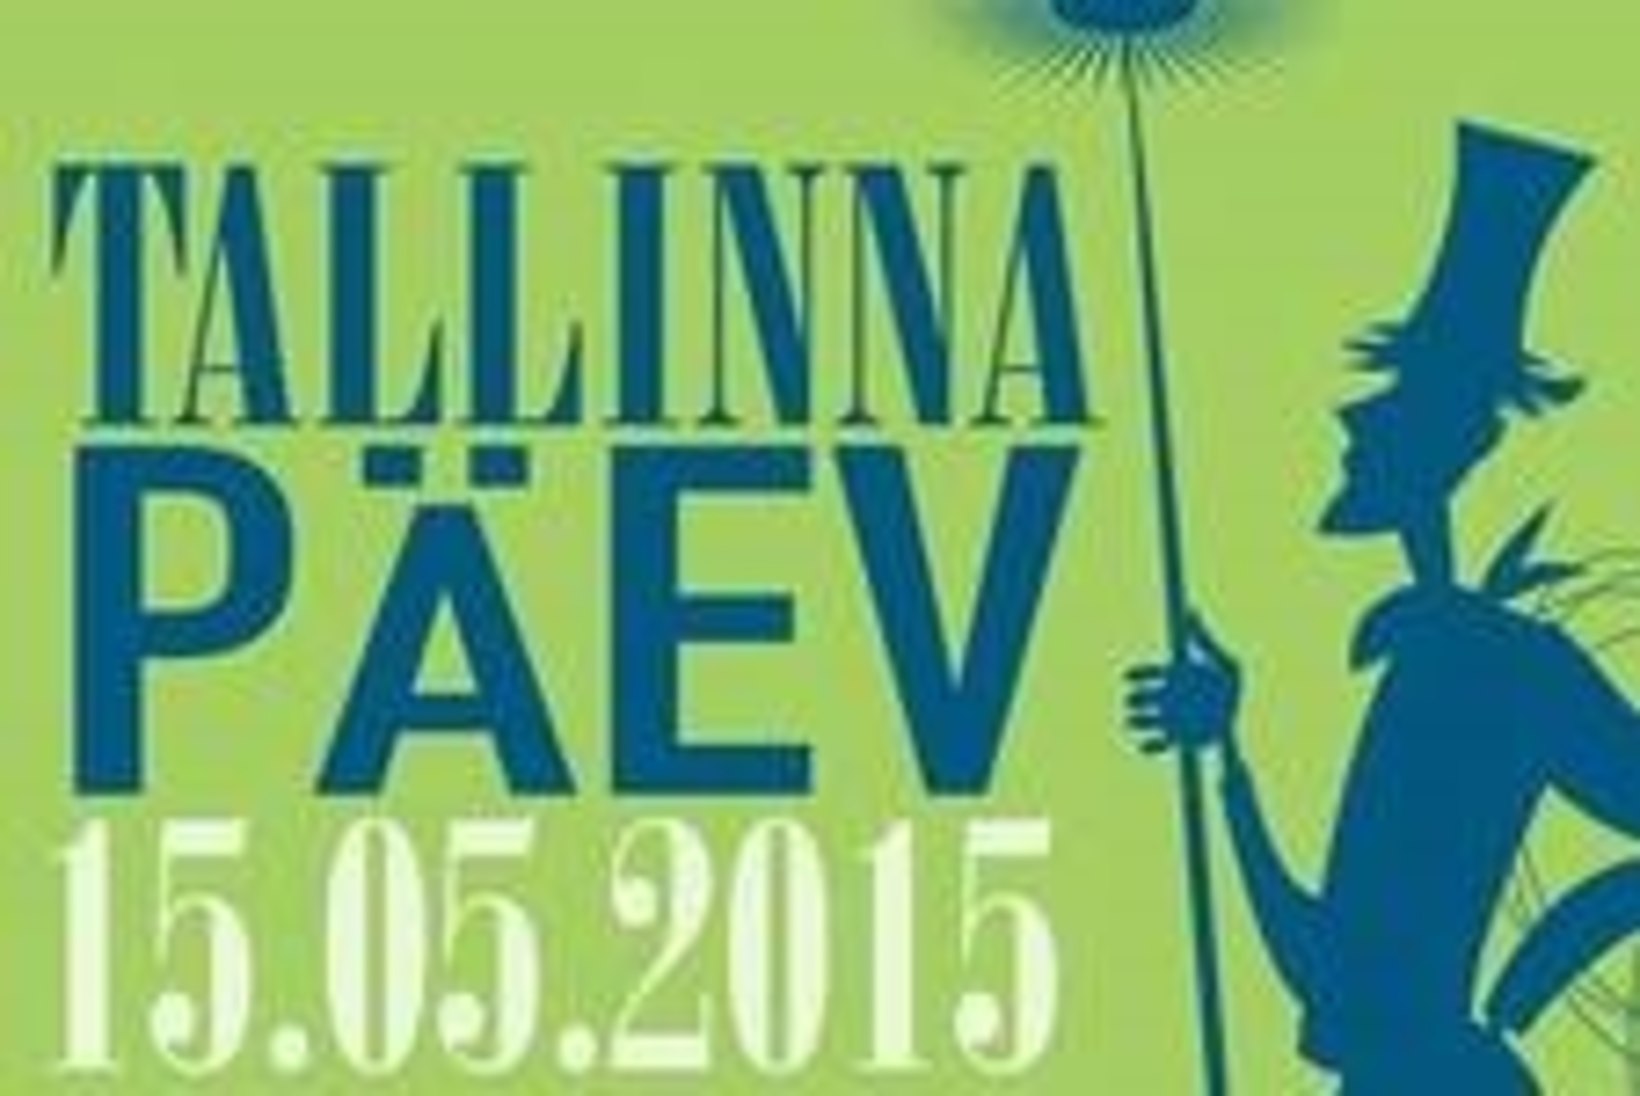 15. MAI: Tallinna päev